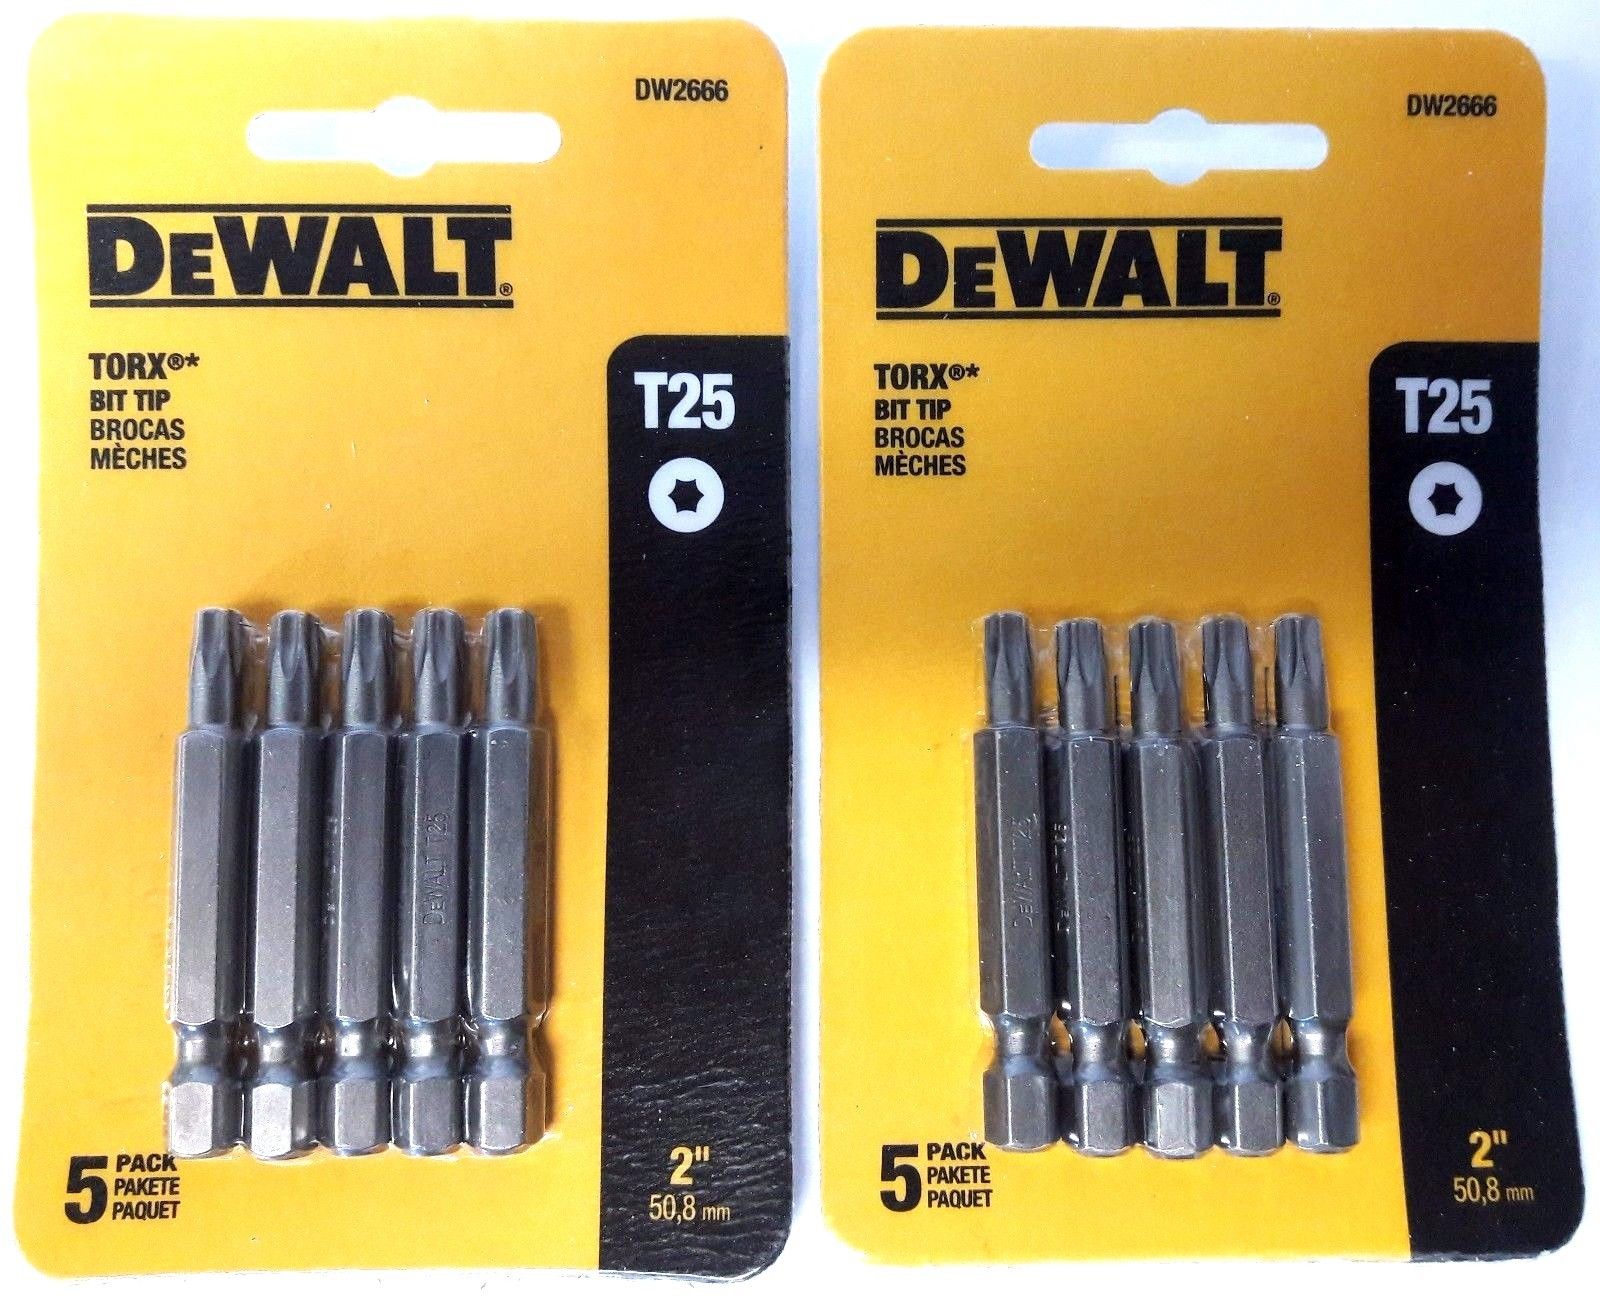 Dewalt DW2666 T25 2" Torx Bits (2 Packs of 5)